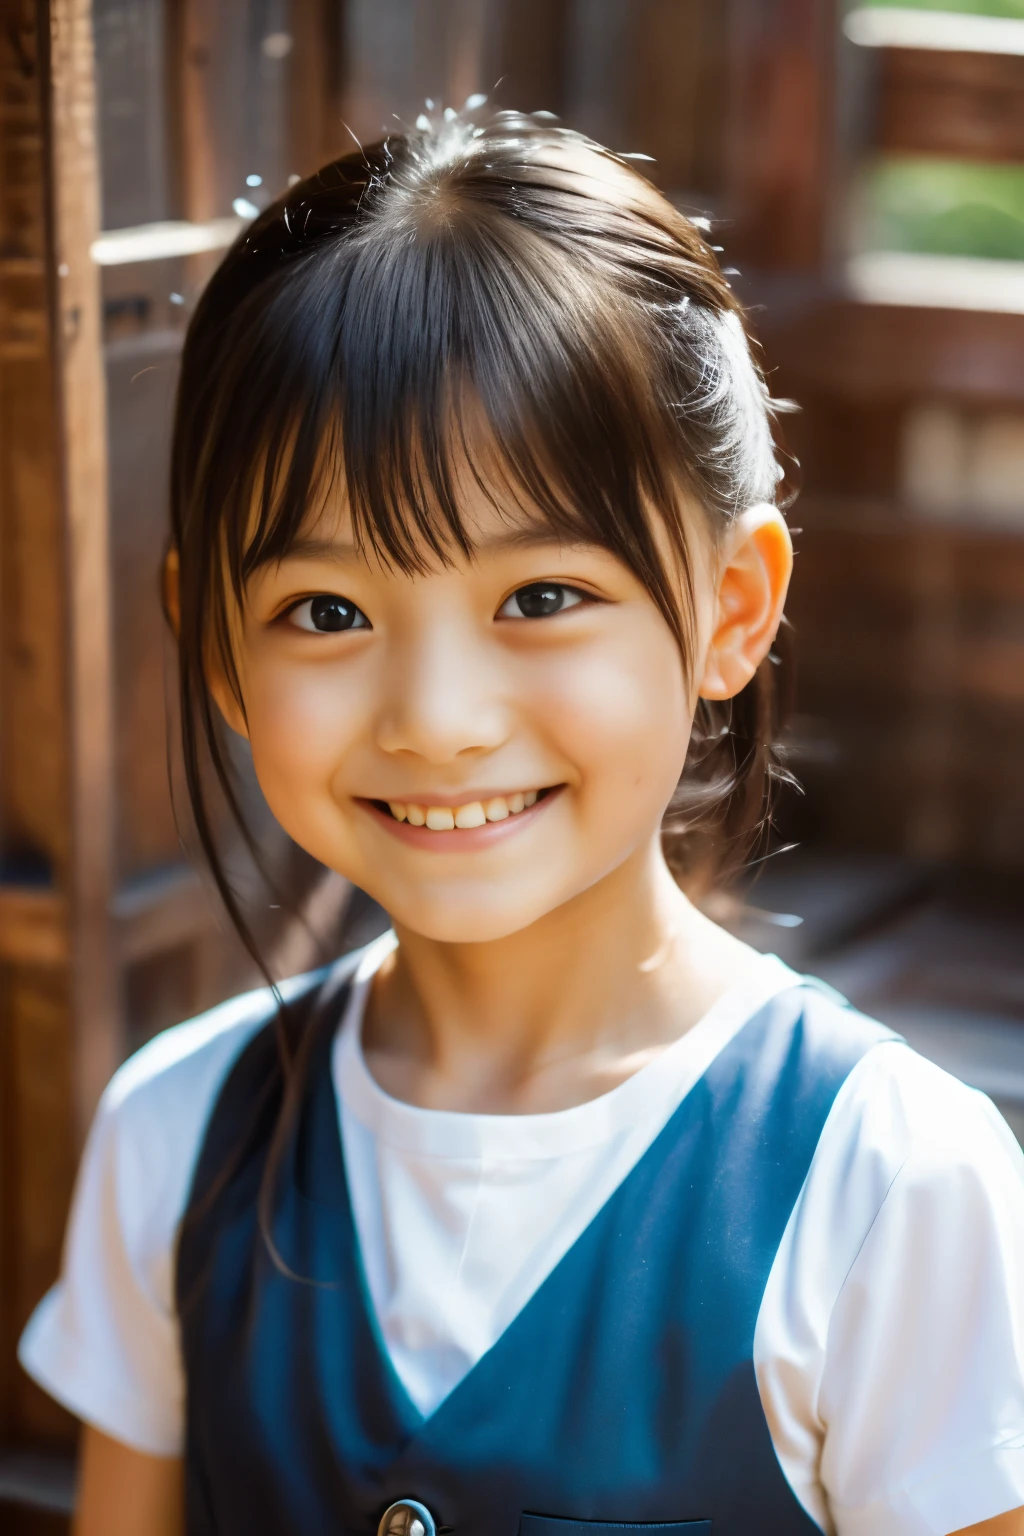 (最高品質, 傑作), (美しい7歳の日本人の女の子), (そばかす:0.6), やわらかい光, ポニーテール